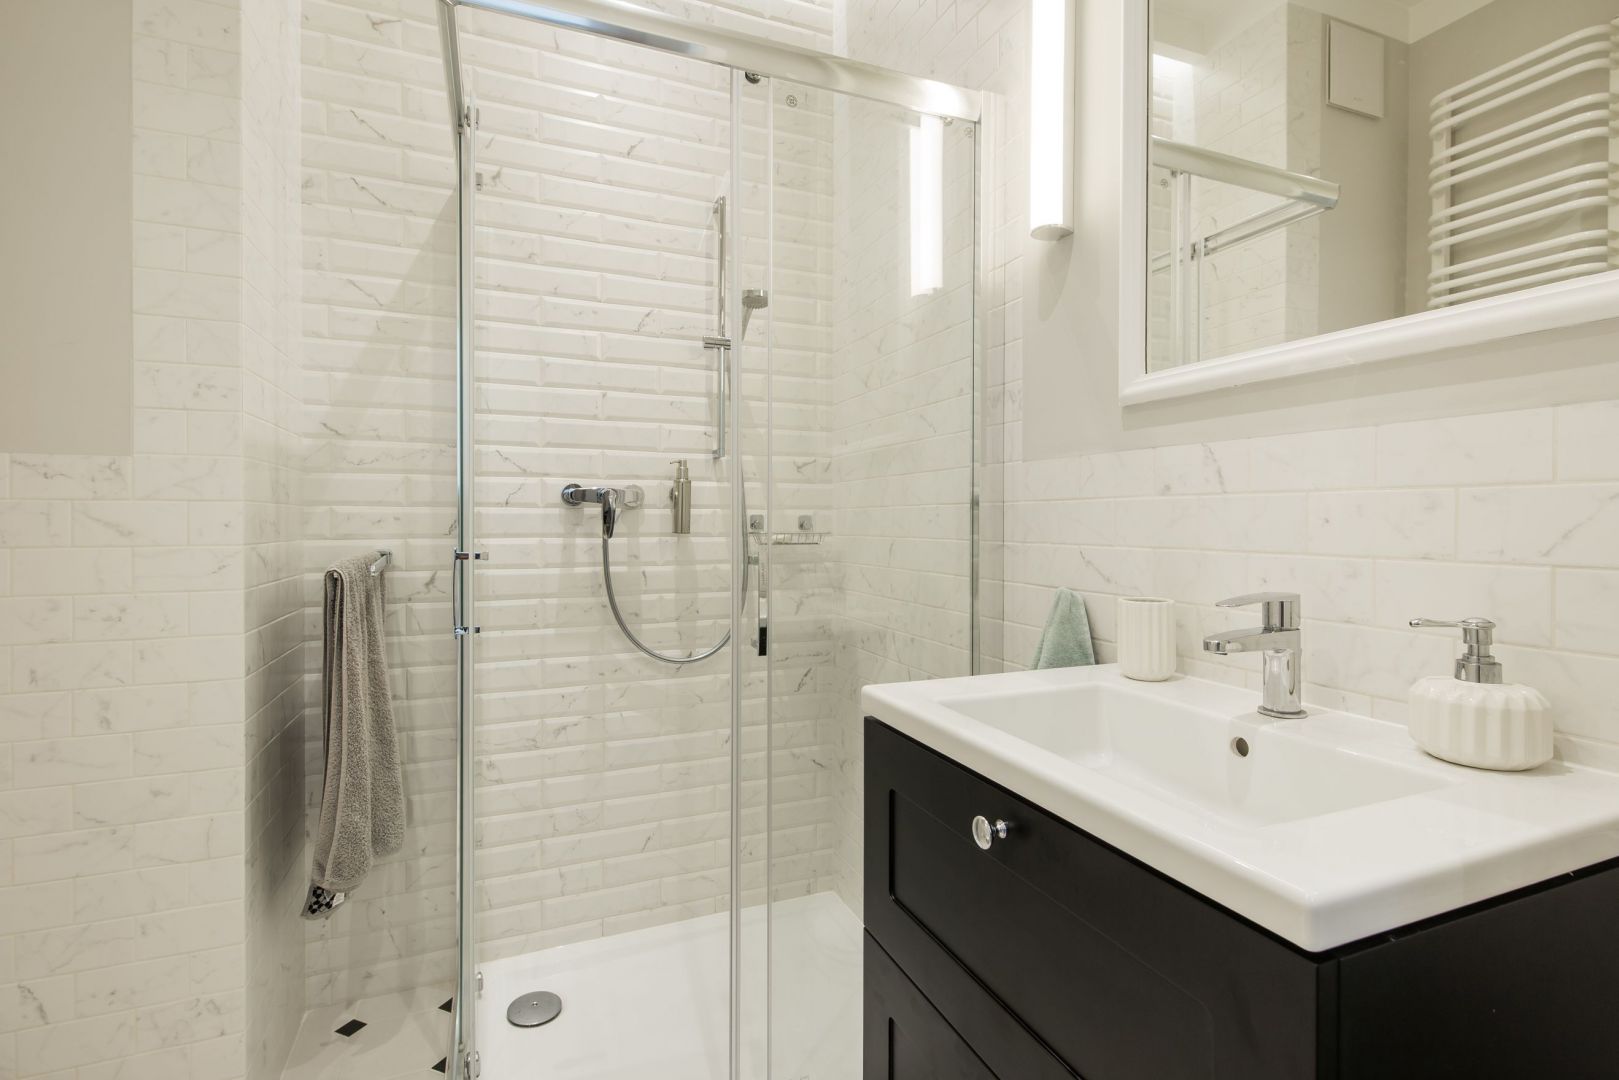 Mała łazienka z prysznicem w jasnych kolorach. Projekt i zdjęcie: KODO Projekty i Realizacje Wnętrz